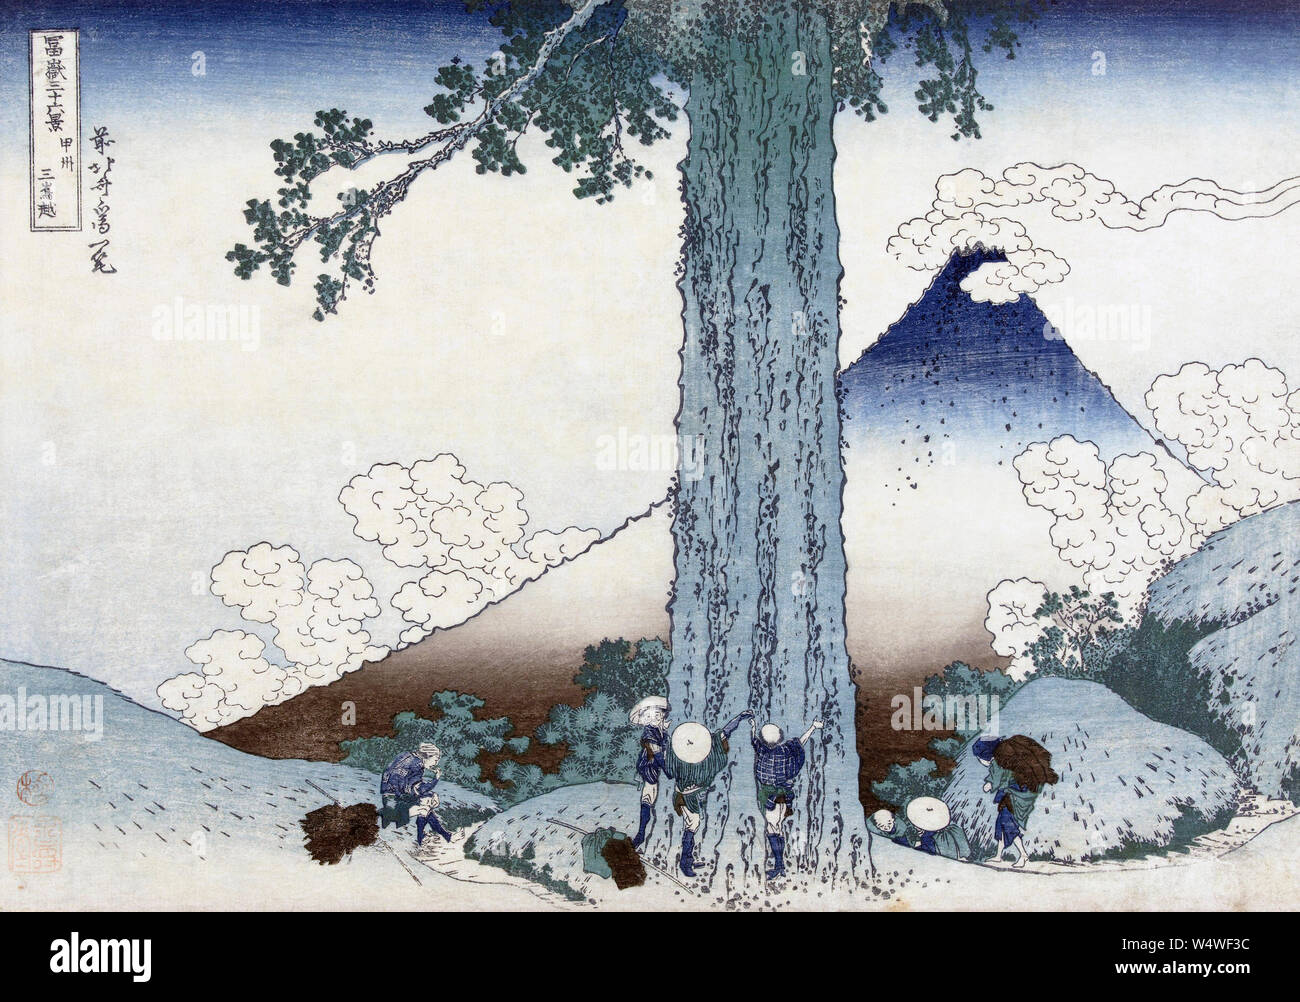 Mishima mountain pass in provincia di Kai, Giappone, mostrando il Monte Fuji. Dopo una stampa woodblock risalenti a circa 1830 dall'artista giapponese Katsushika Hokusai, 1760 - 1849. Il woodblock è parte di una serie conosciuta come trentasei vedute del Monte Fuji. Foto Stock